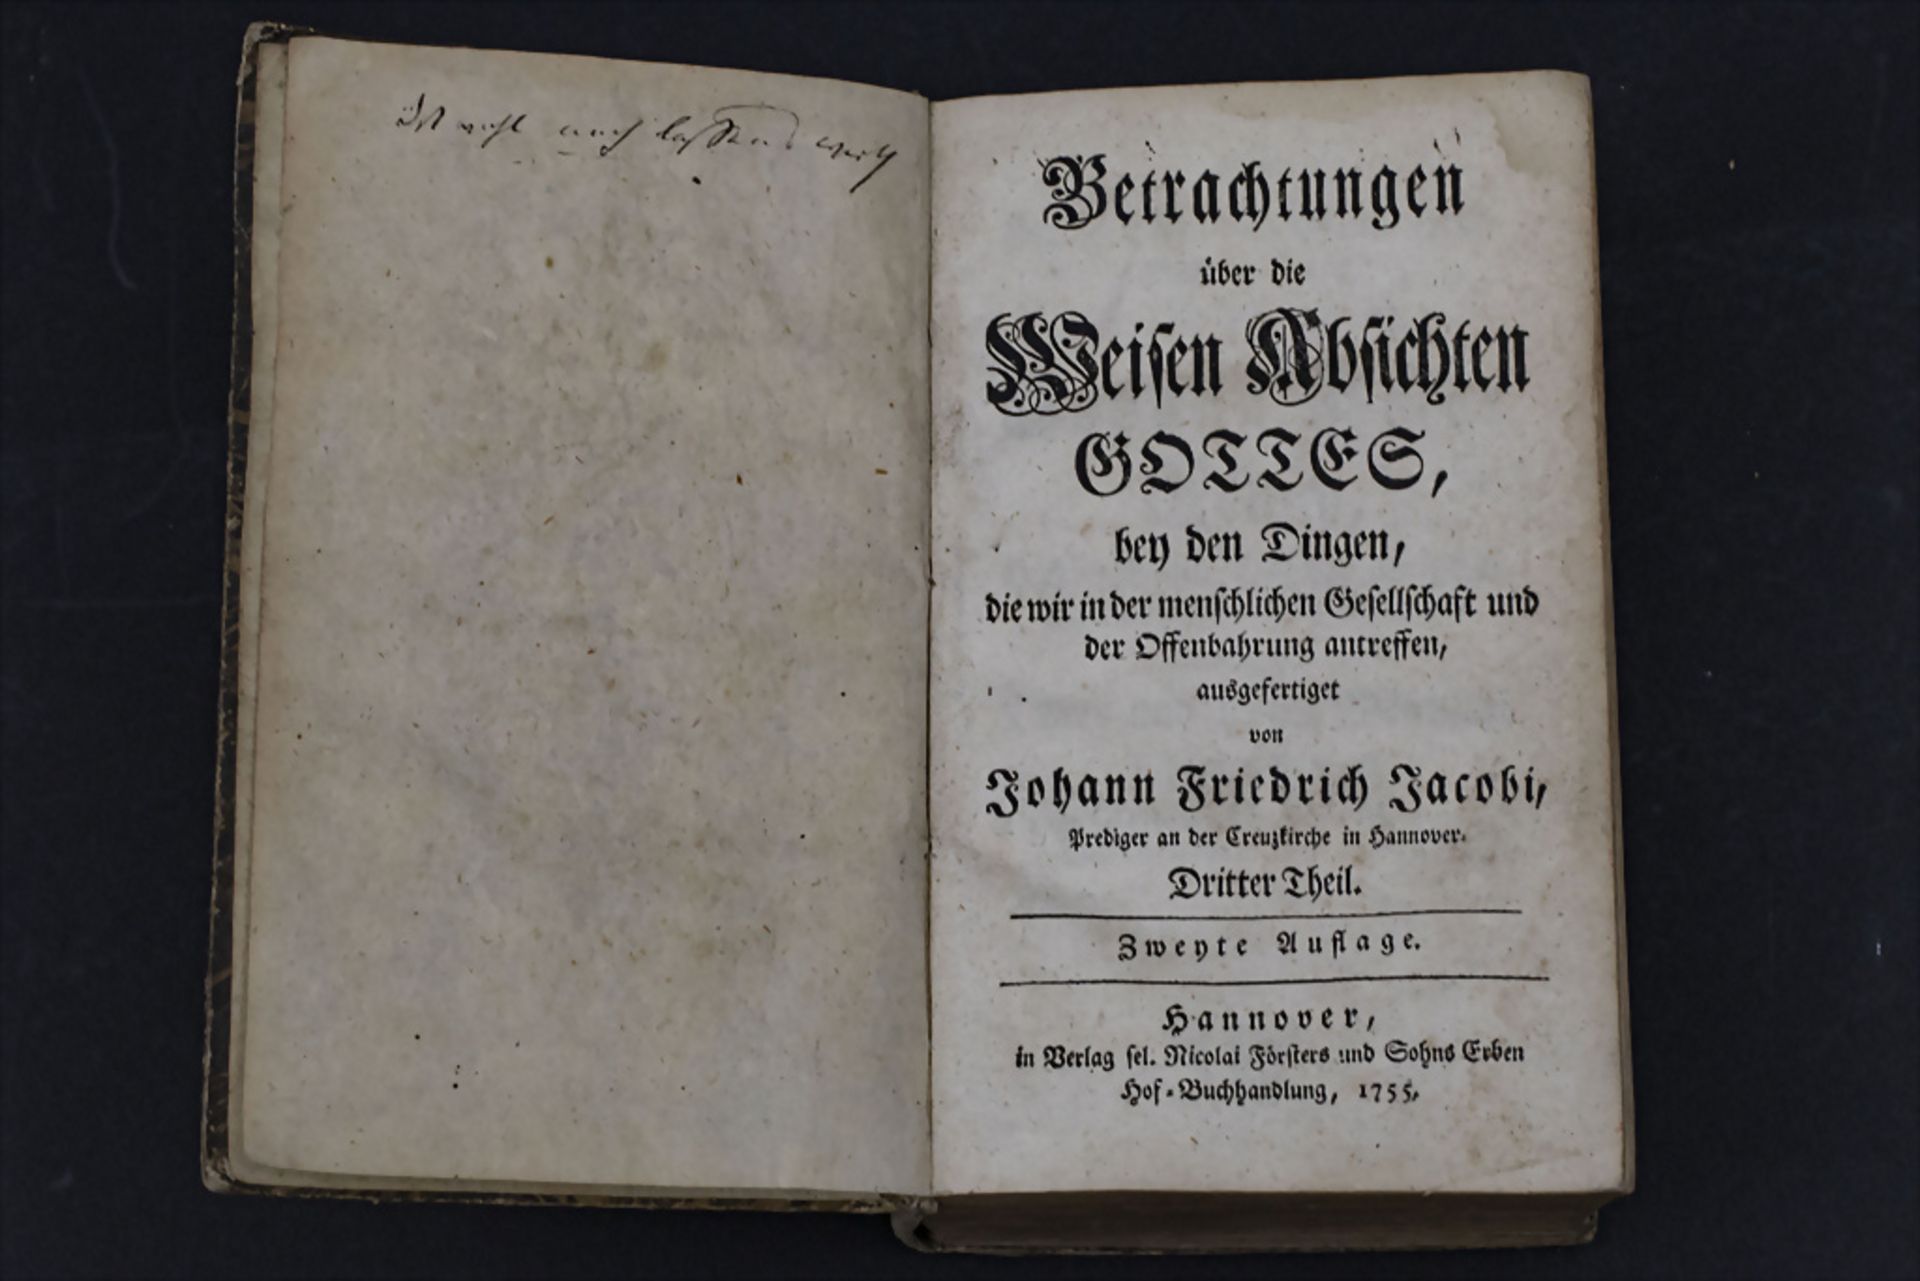 Johann Friedrich Jacobi, 'Betrachtungen über die Weisen Absichten Gottes', 1755